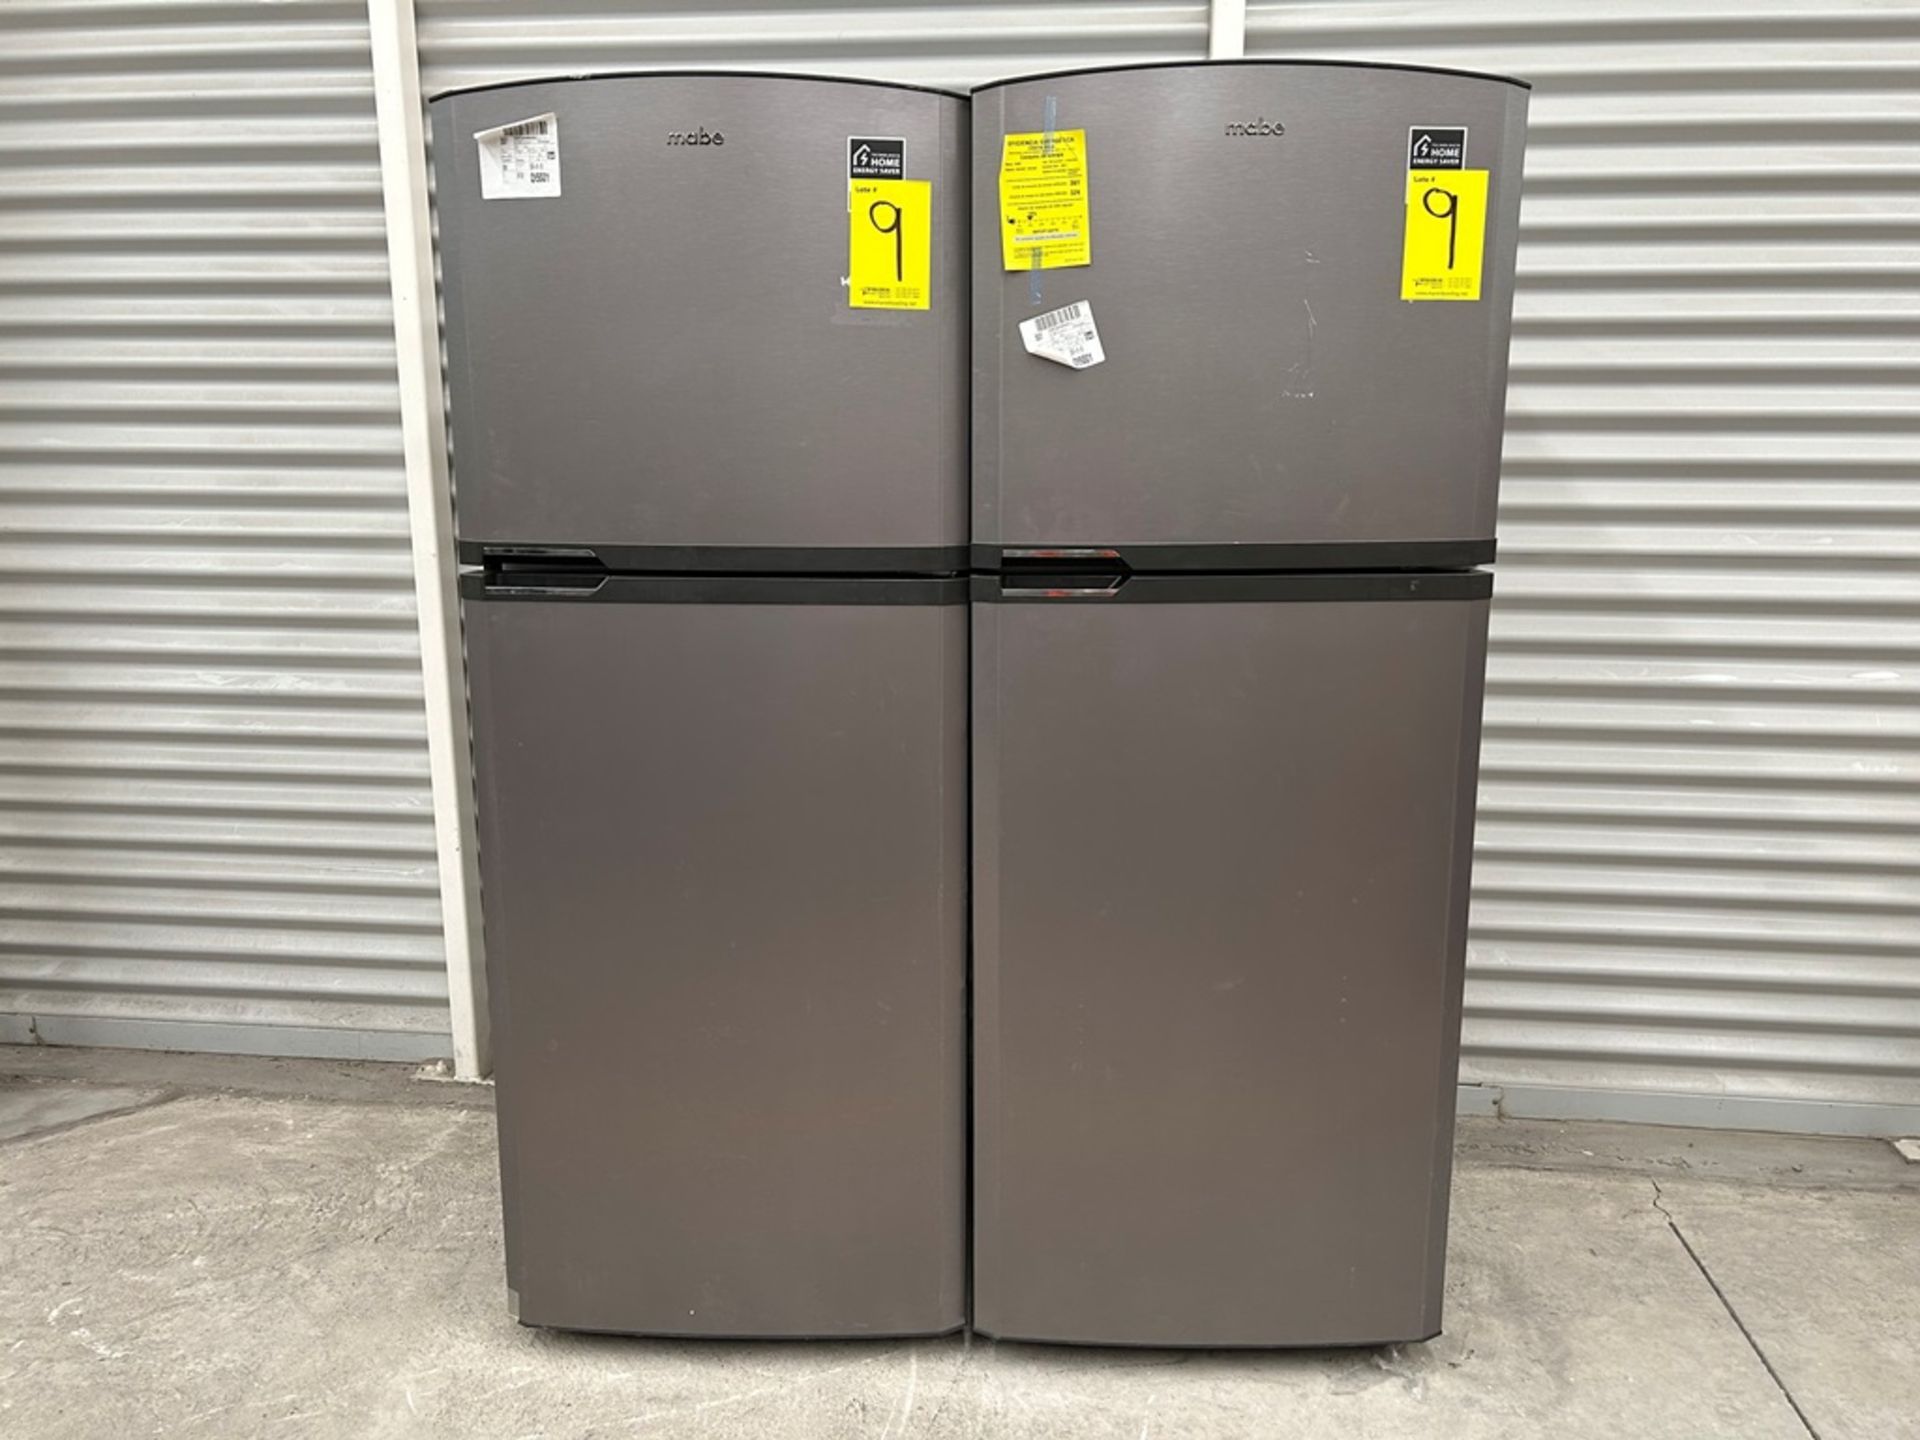 Lote de 2 refrigeradores contiene: 1 Refrigerador Marca MABE, Modelo RME360PVMRM0, Serie 01177, Col